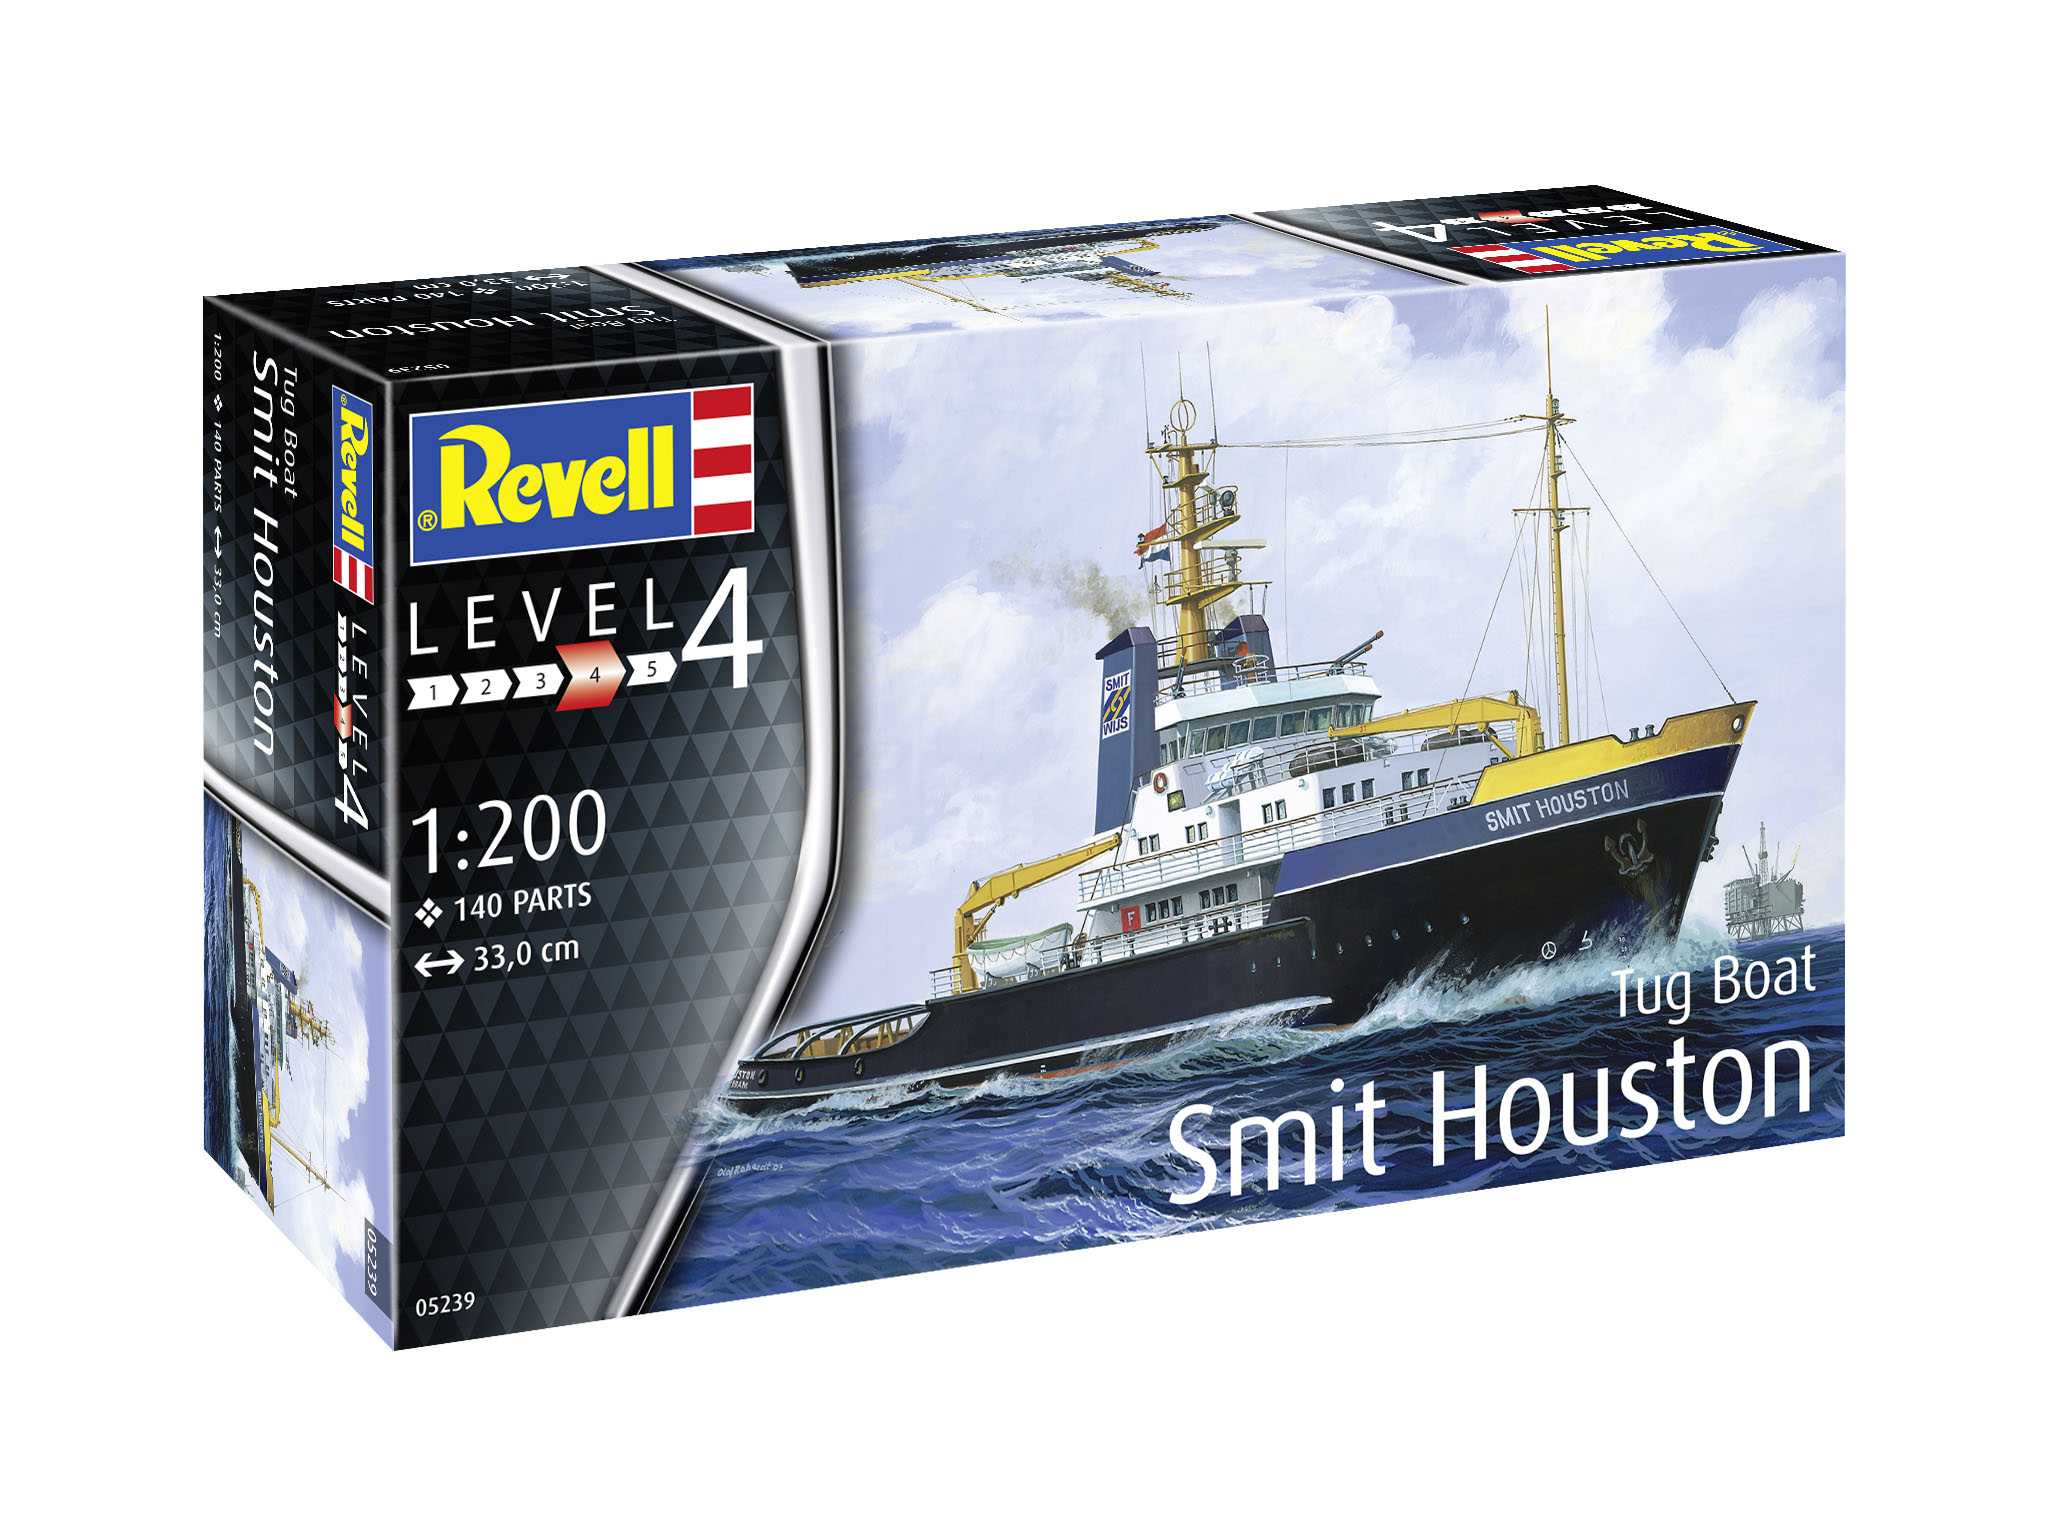 Revell Plastic ModelKit loď 05239 - Smit Houston (1:200)